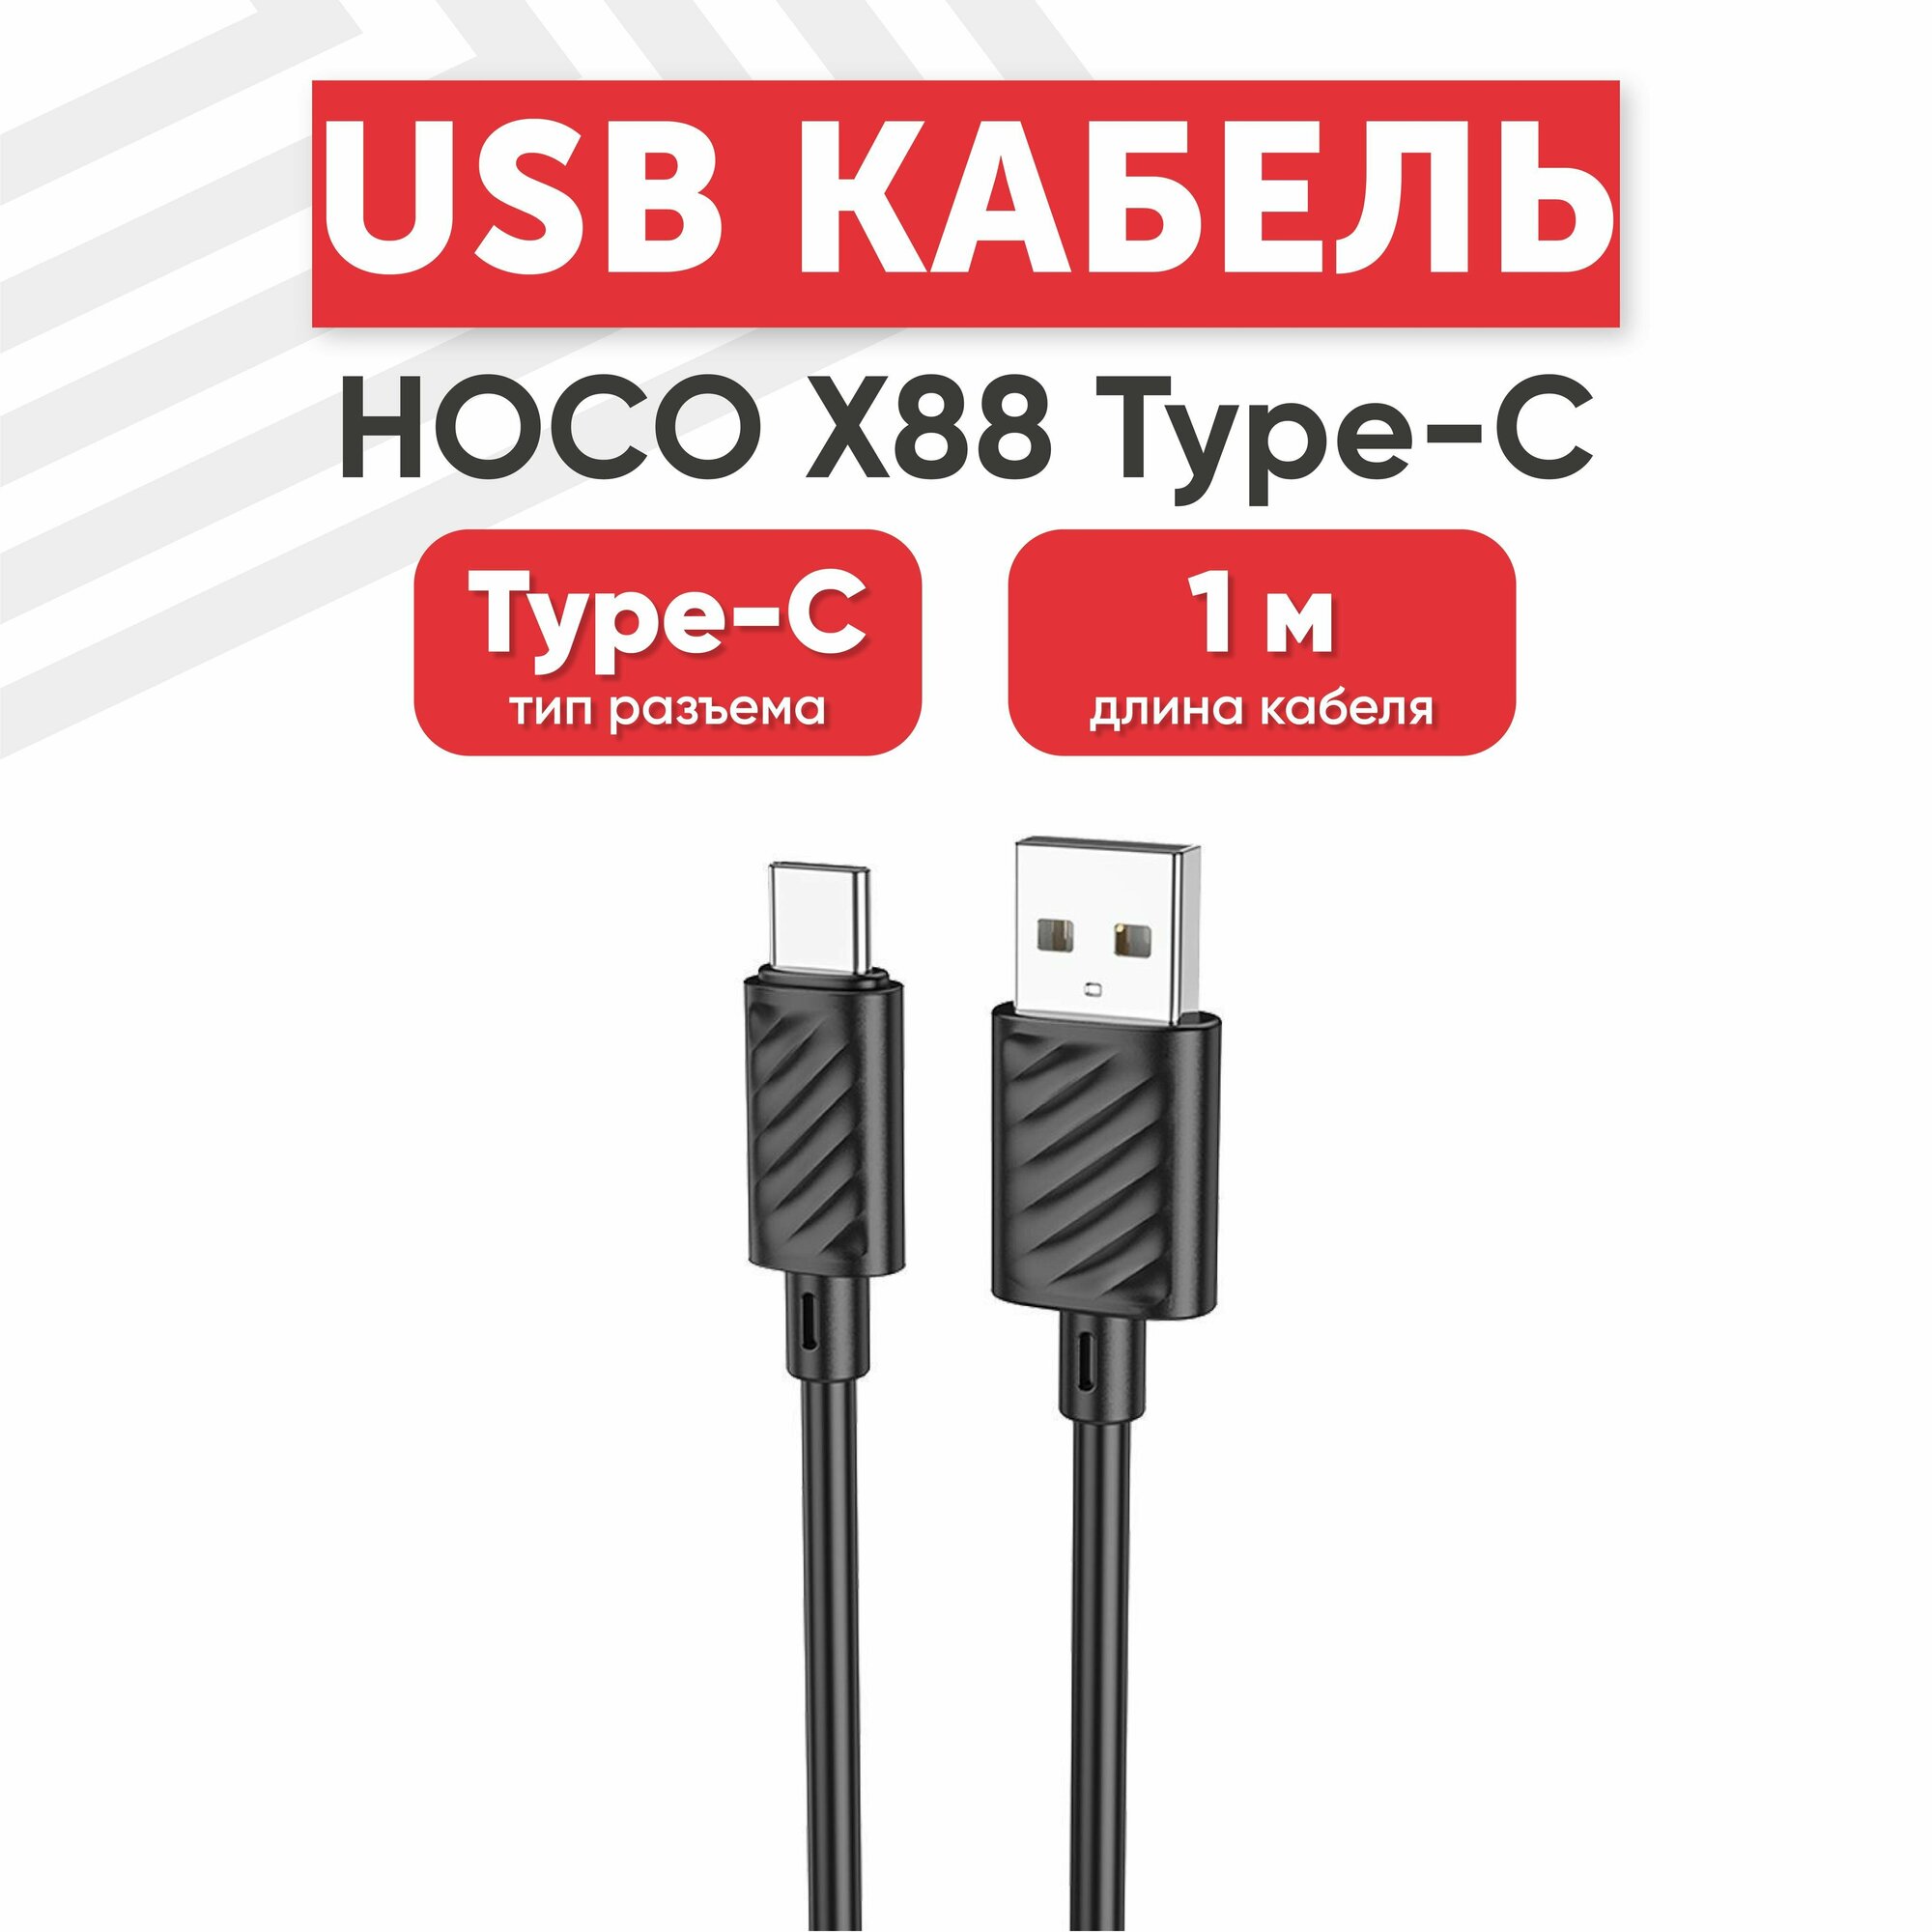 USB кабель Hoco X88 для зарядки, передачи данных, Type-C, 3А, 1 метр, TPU, черный